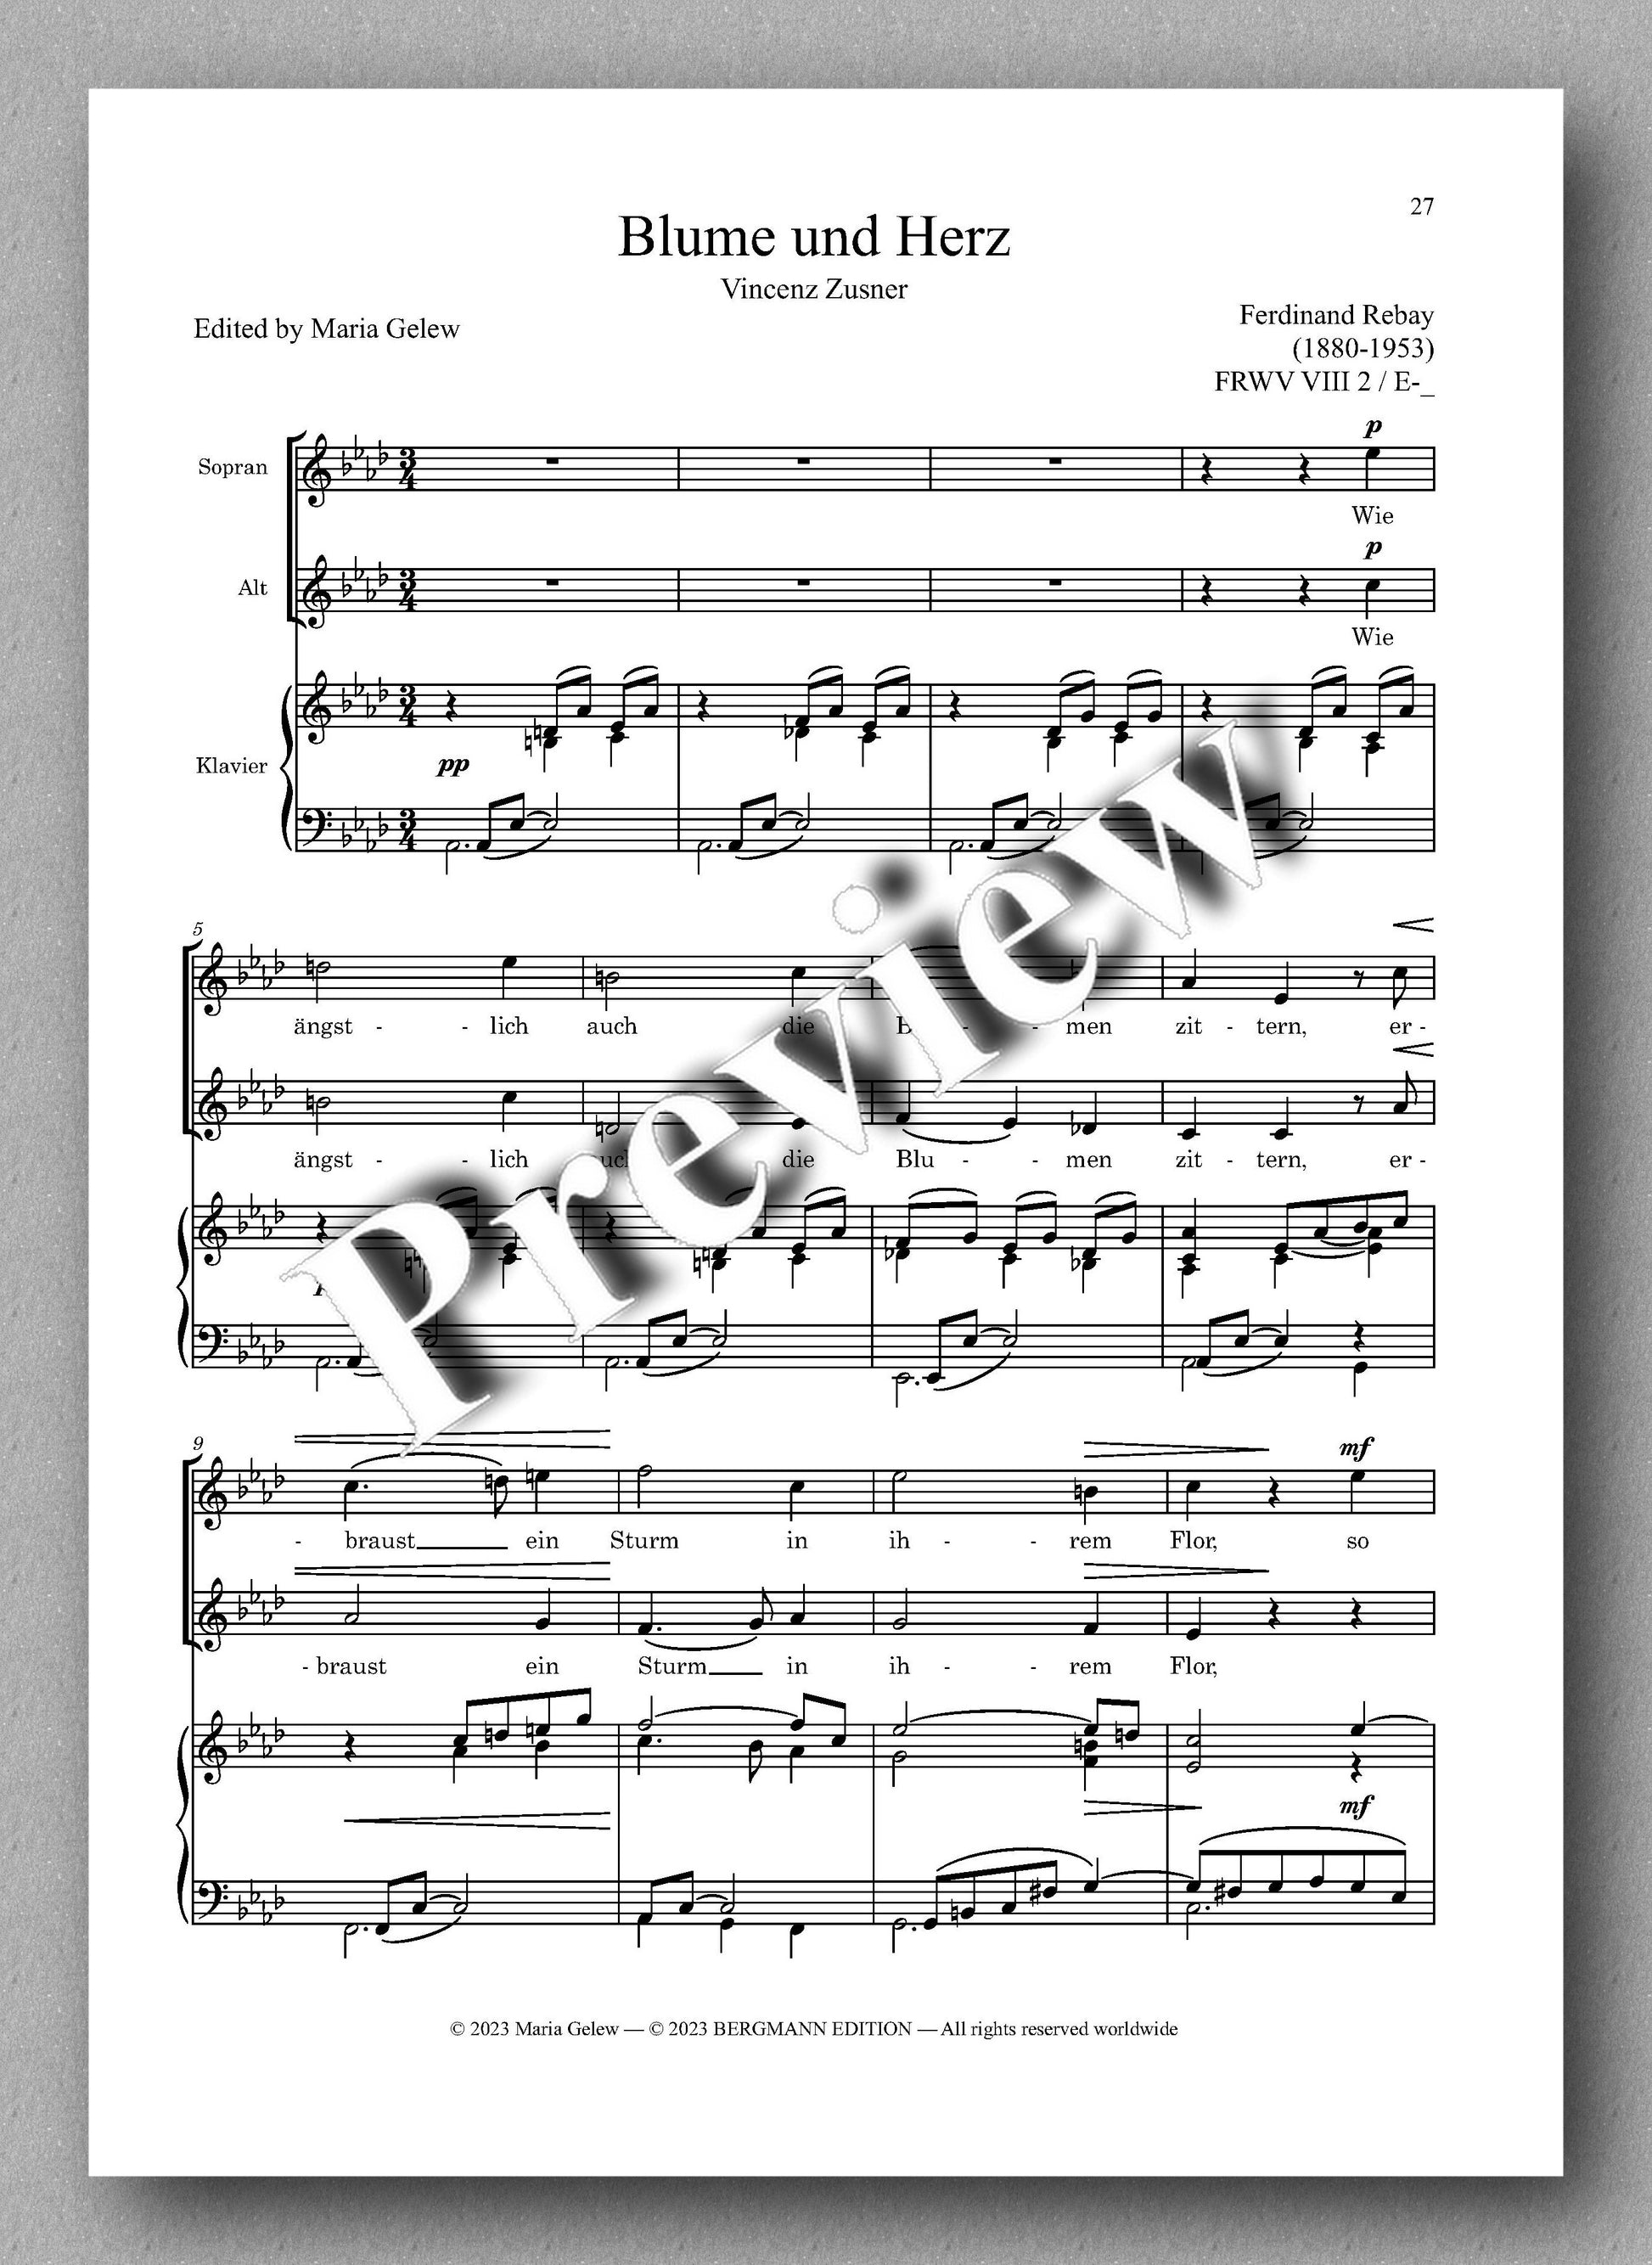 Ferdinand Rebay, Lieder für zwei Singstimmen mit Klavierbegleitung - preview of the music score 3